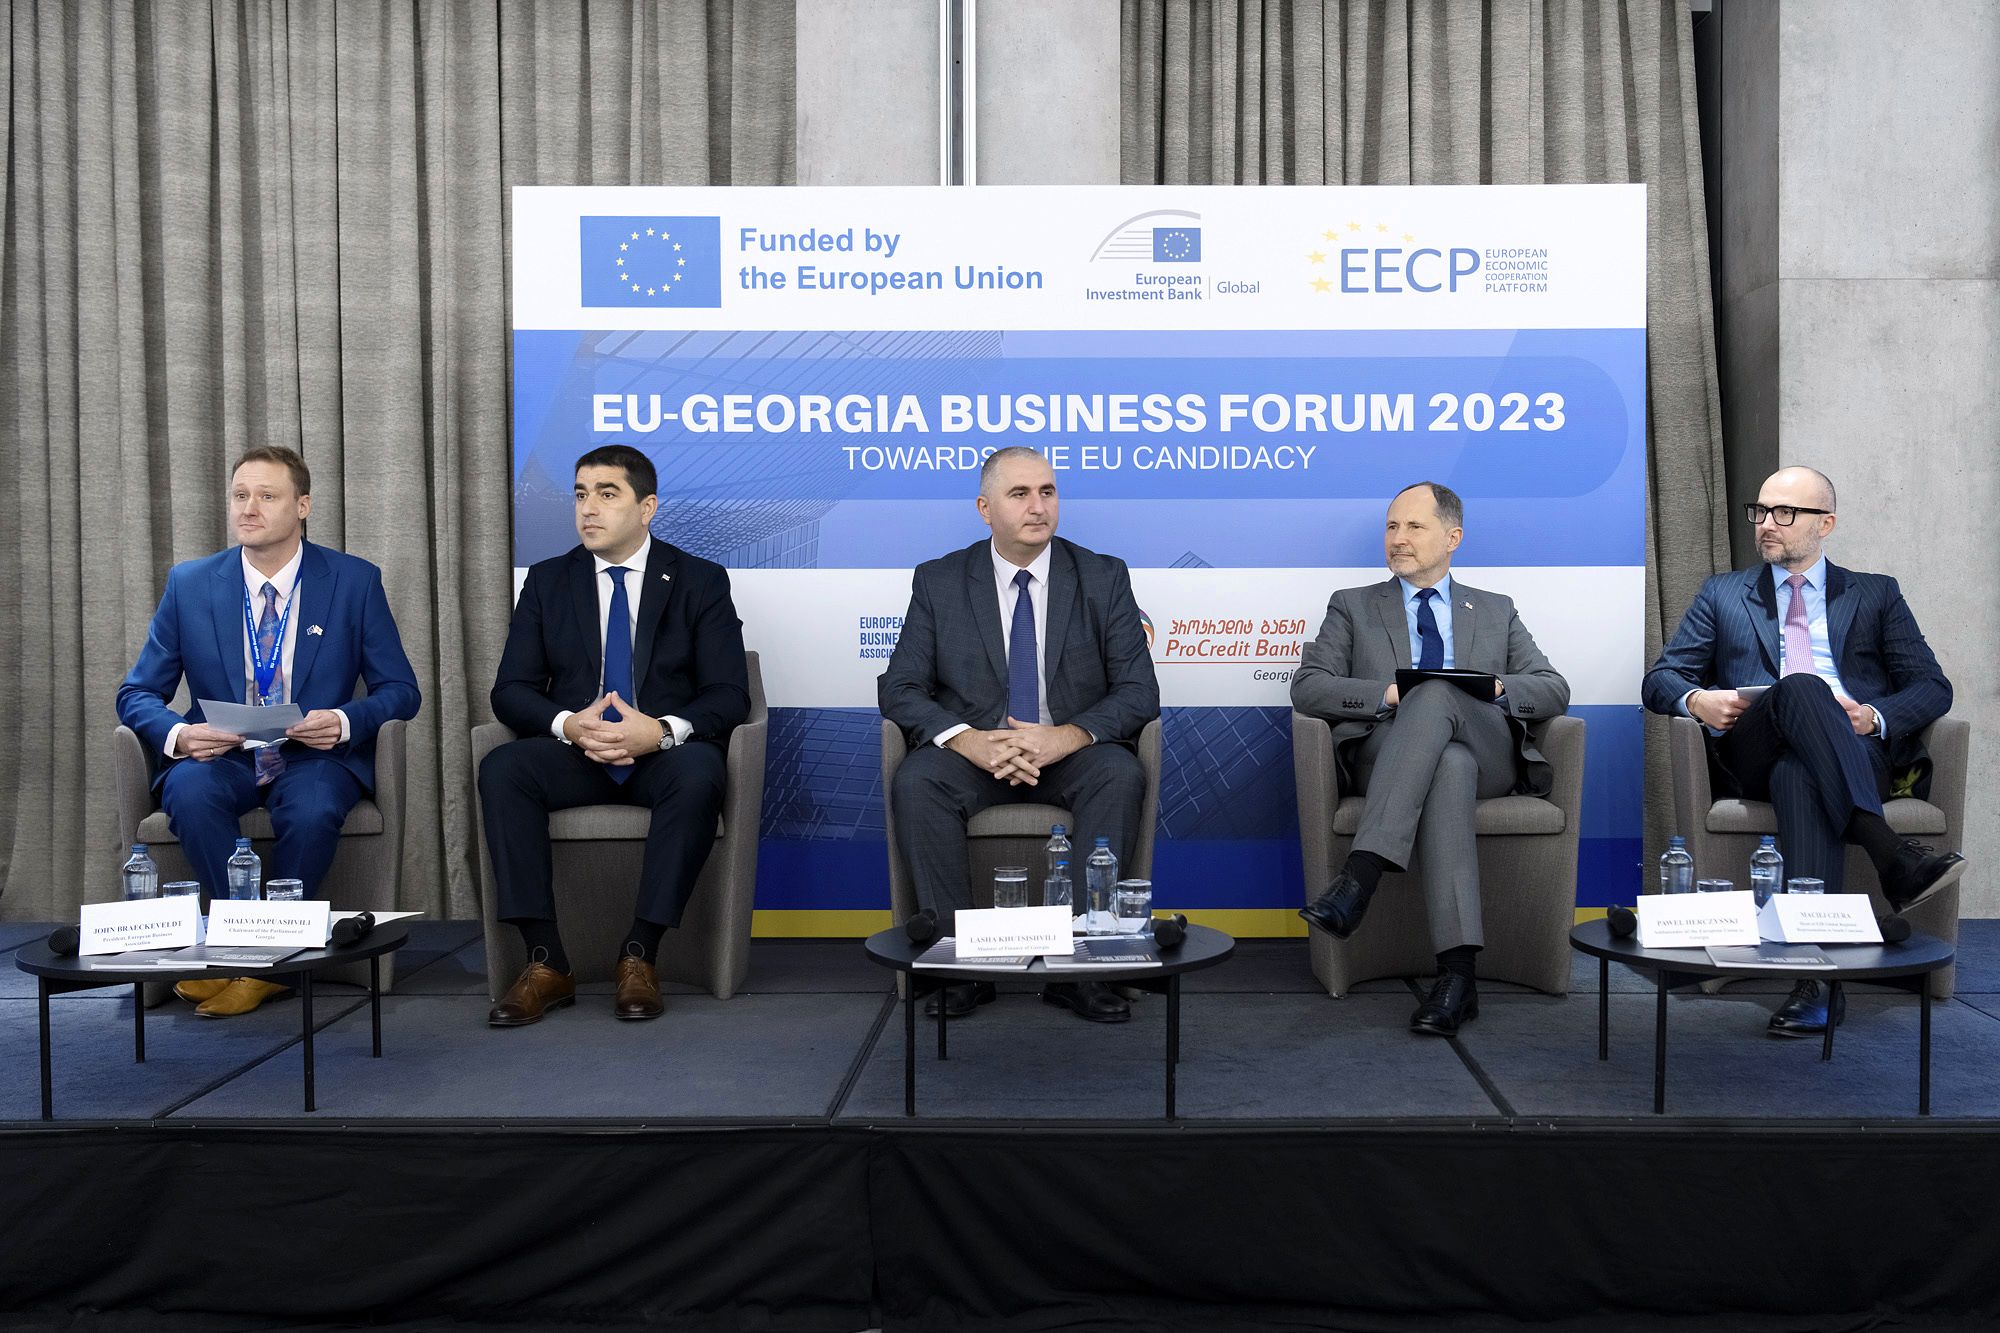 ევროკავშირი-საქართველოს ბიზნეს ფორუმი 2023 / EU-Georgia Business Forum 2023